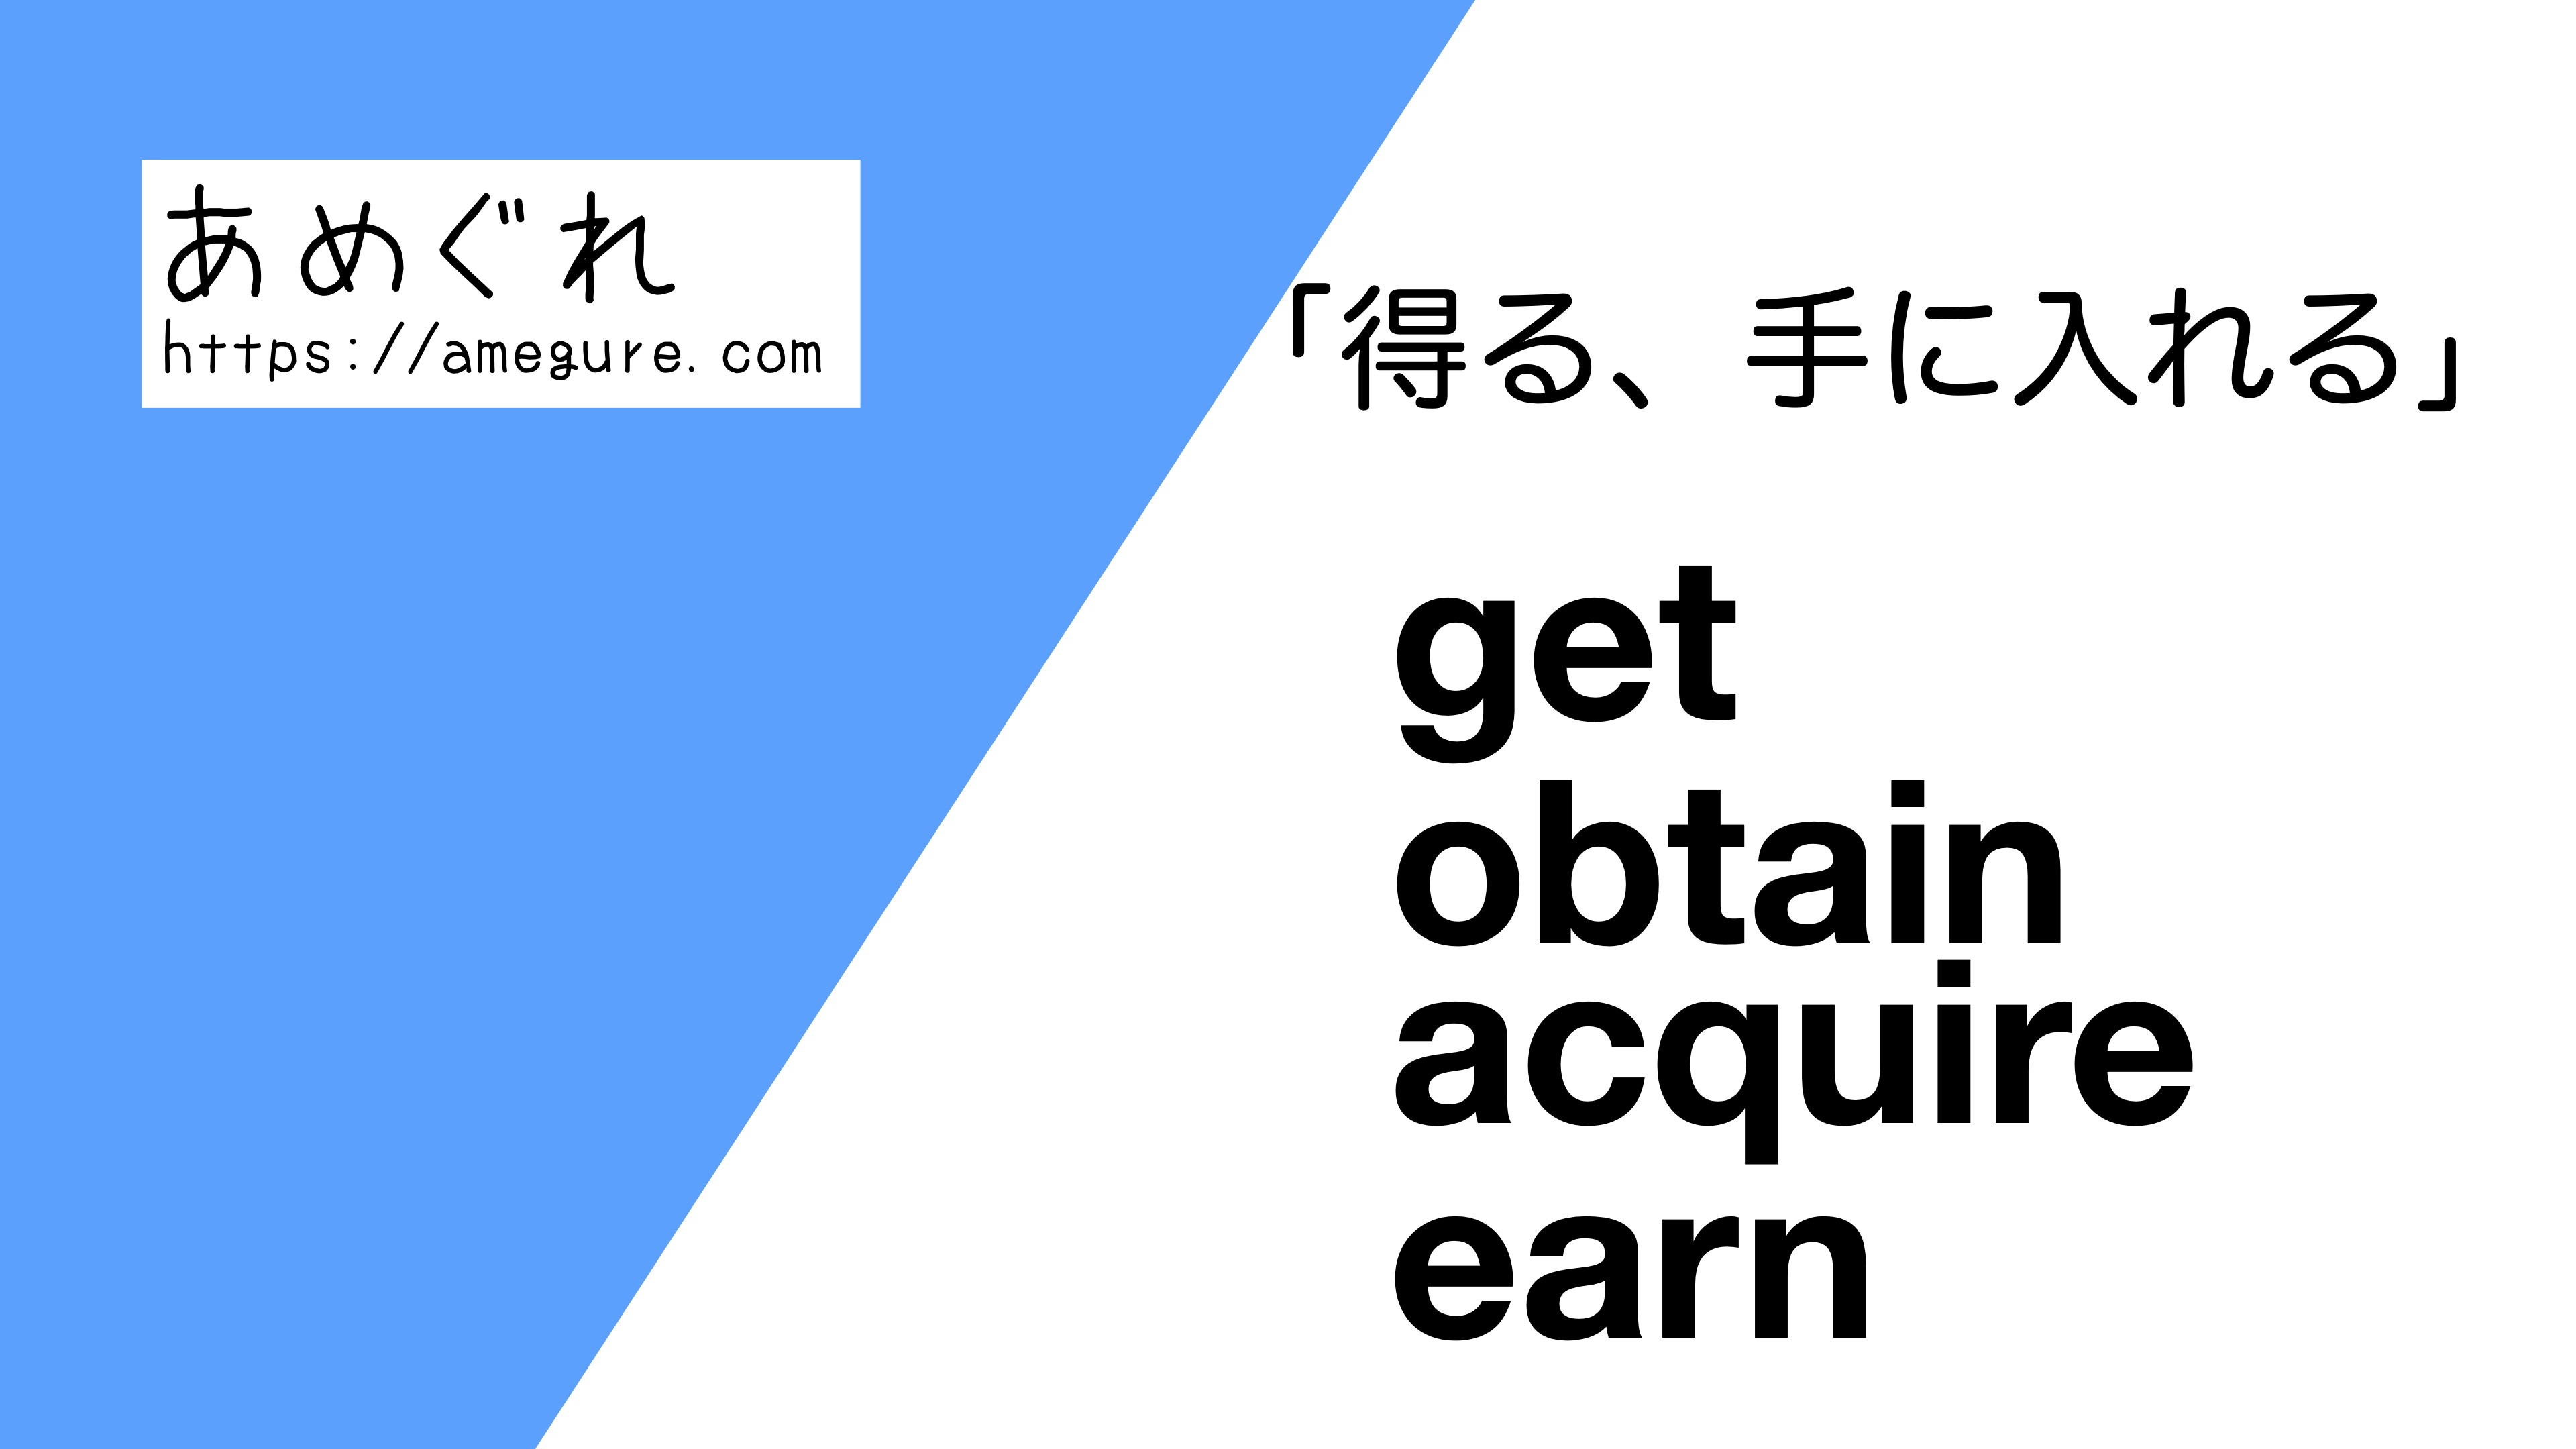 英語 Get Obtain Acquire Earn 得る 手に入れる の意味の違いと使い分け